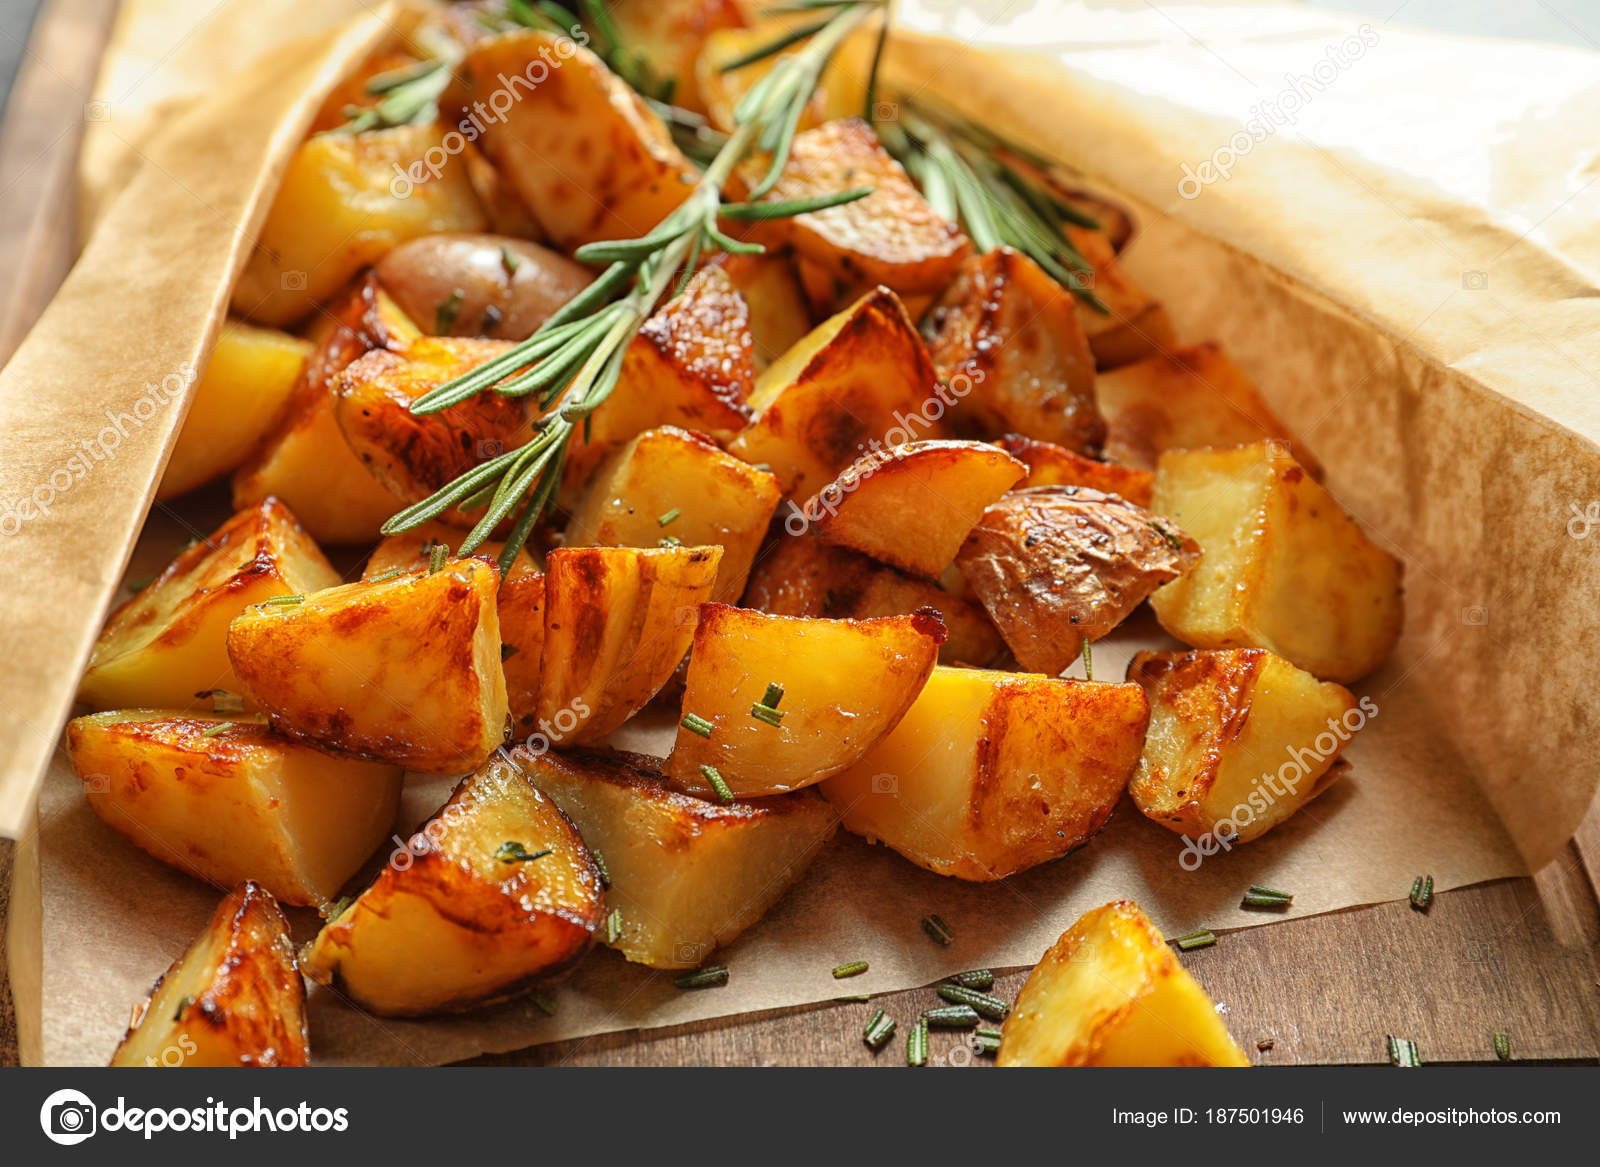 Картофель запечен в духовке. Картофель в рукаве. Картошка в духовке. Картошка в рукаве в духовке. Картофель запеченный ломтиками.